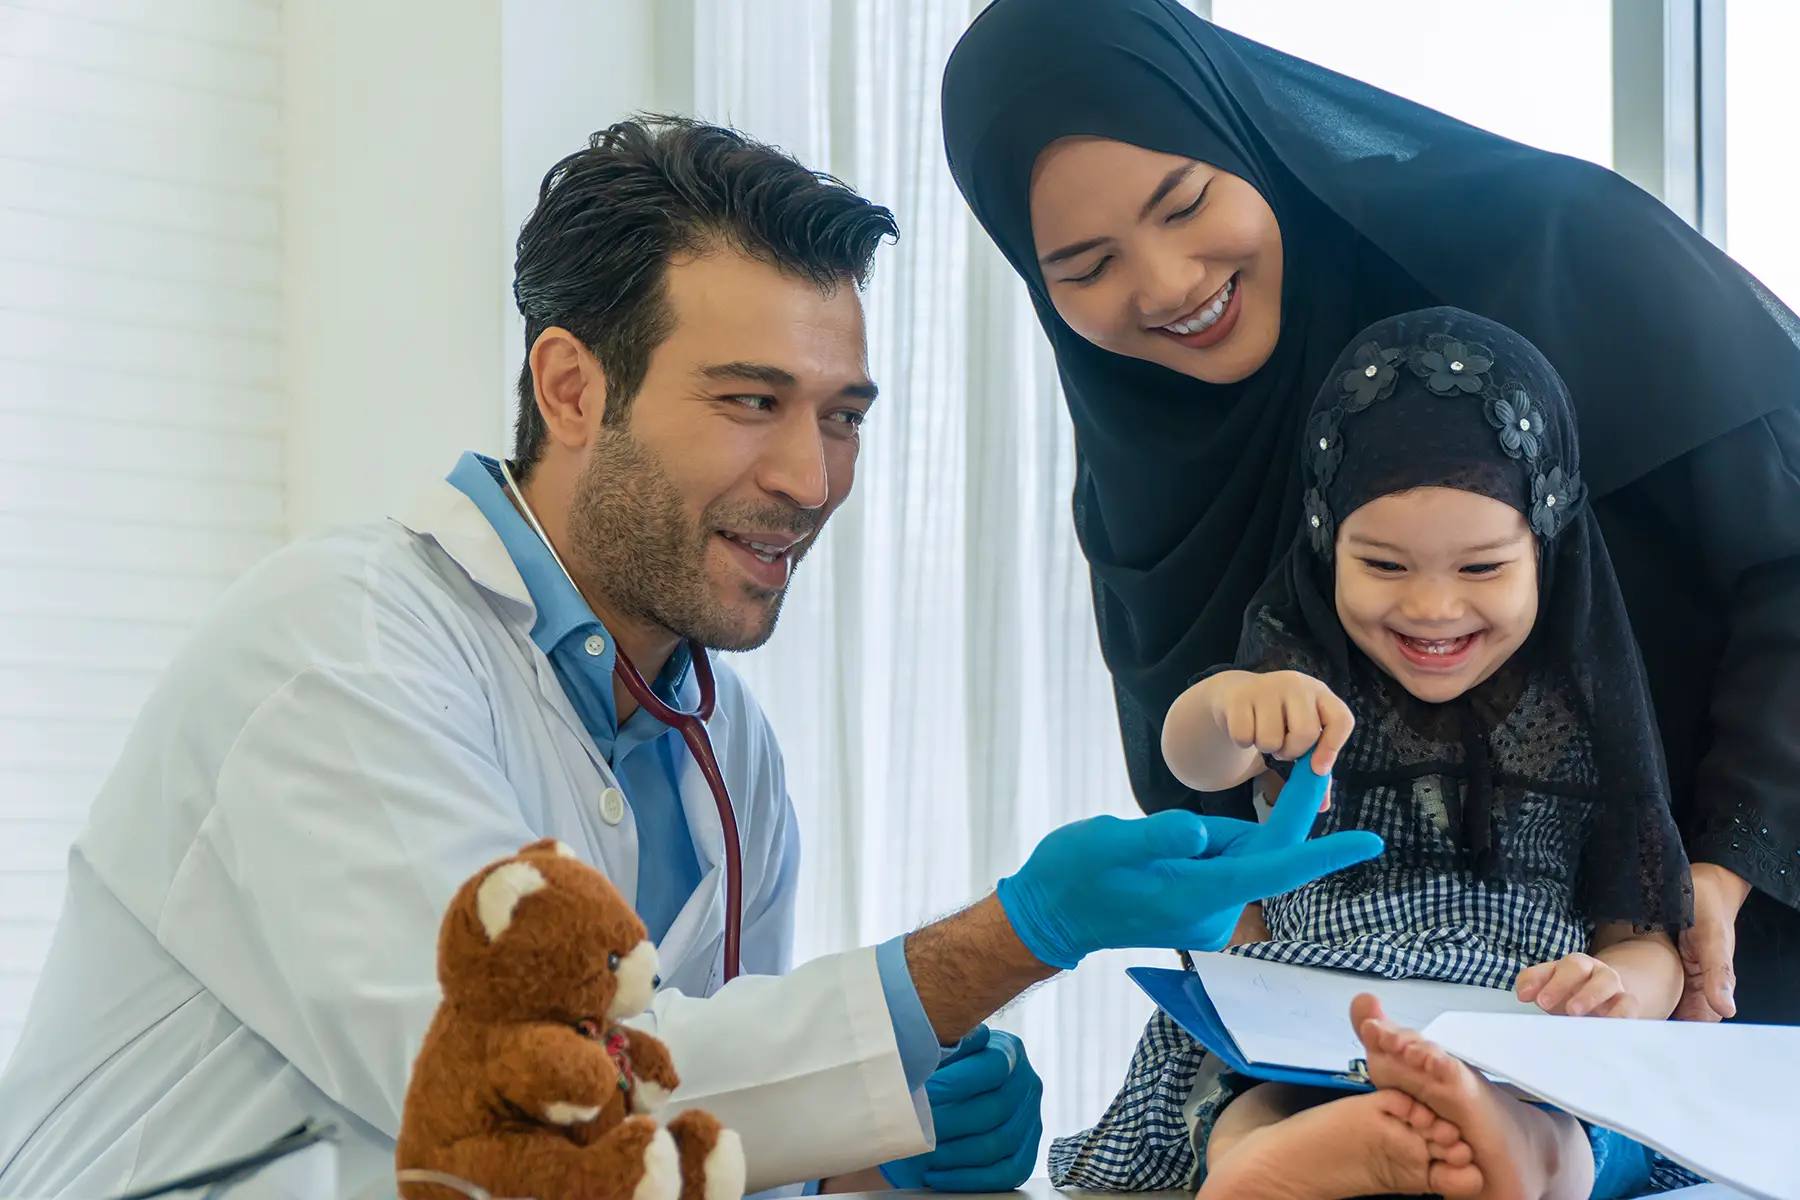 Vaccinating children in the UAE